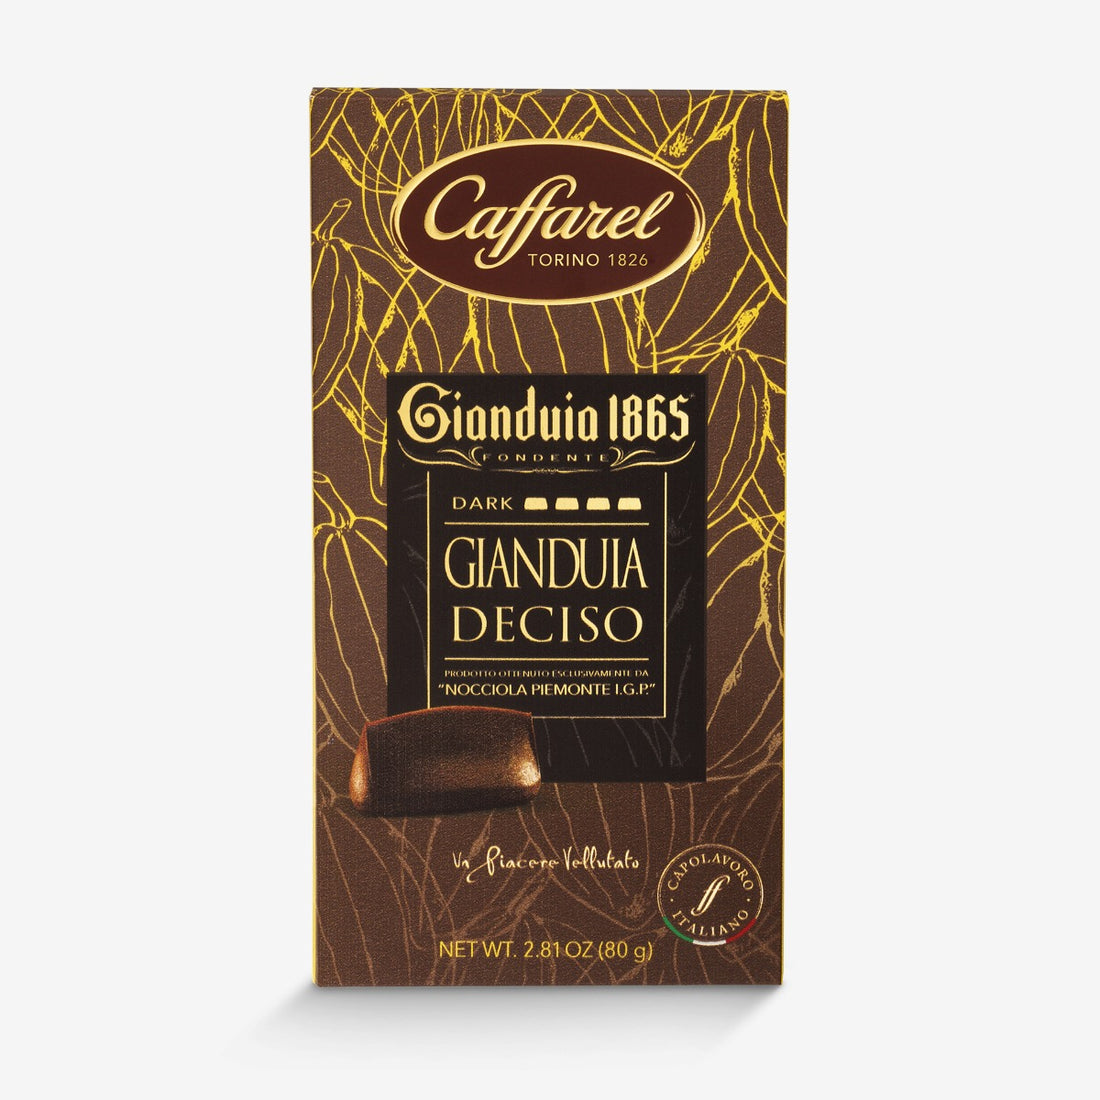 Gianduia 1865: Decided Gianduia Bar